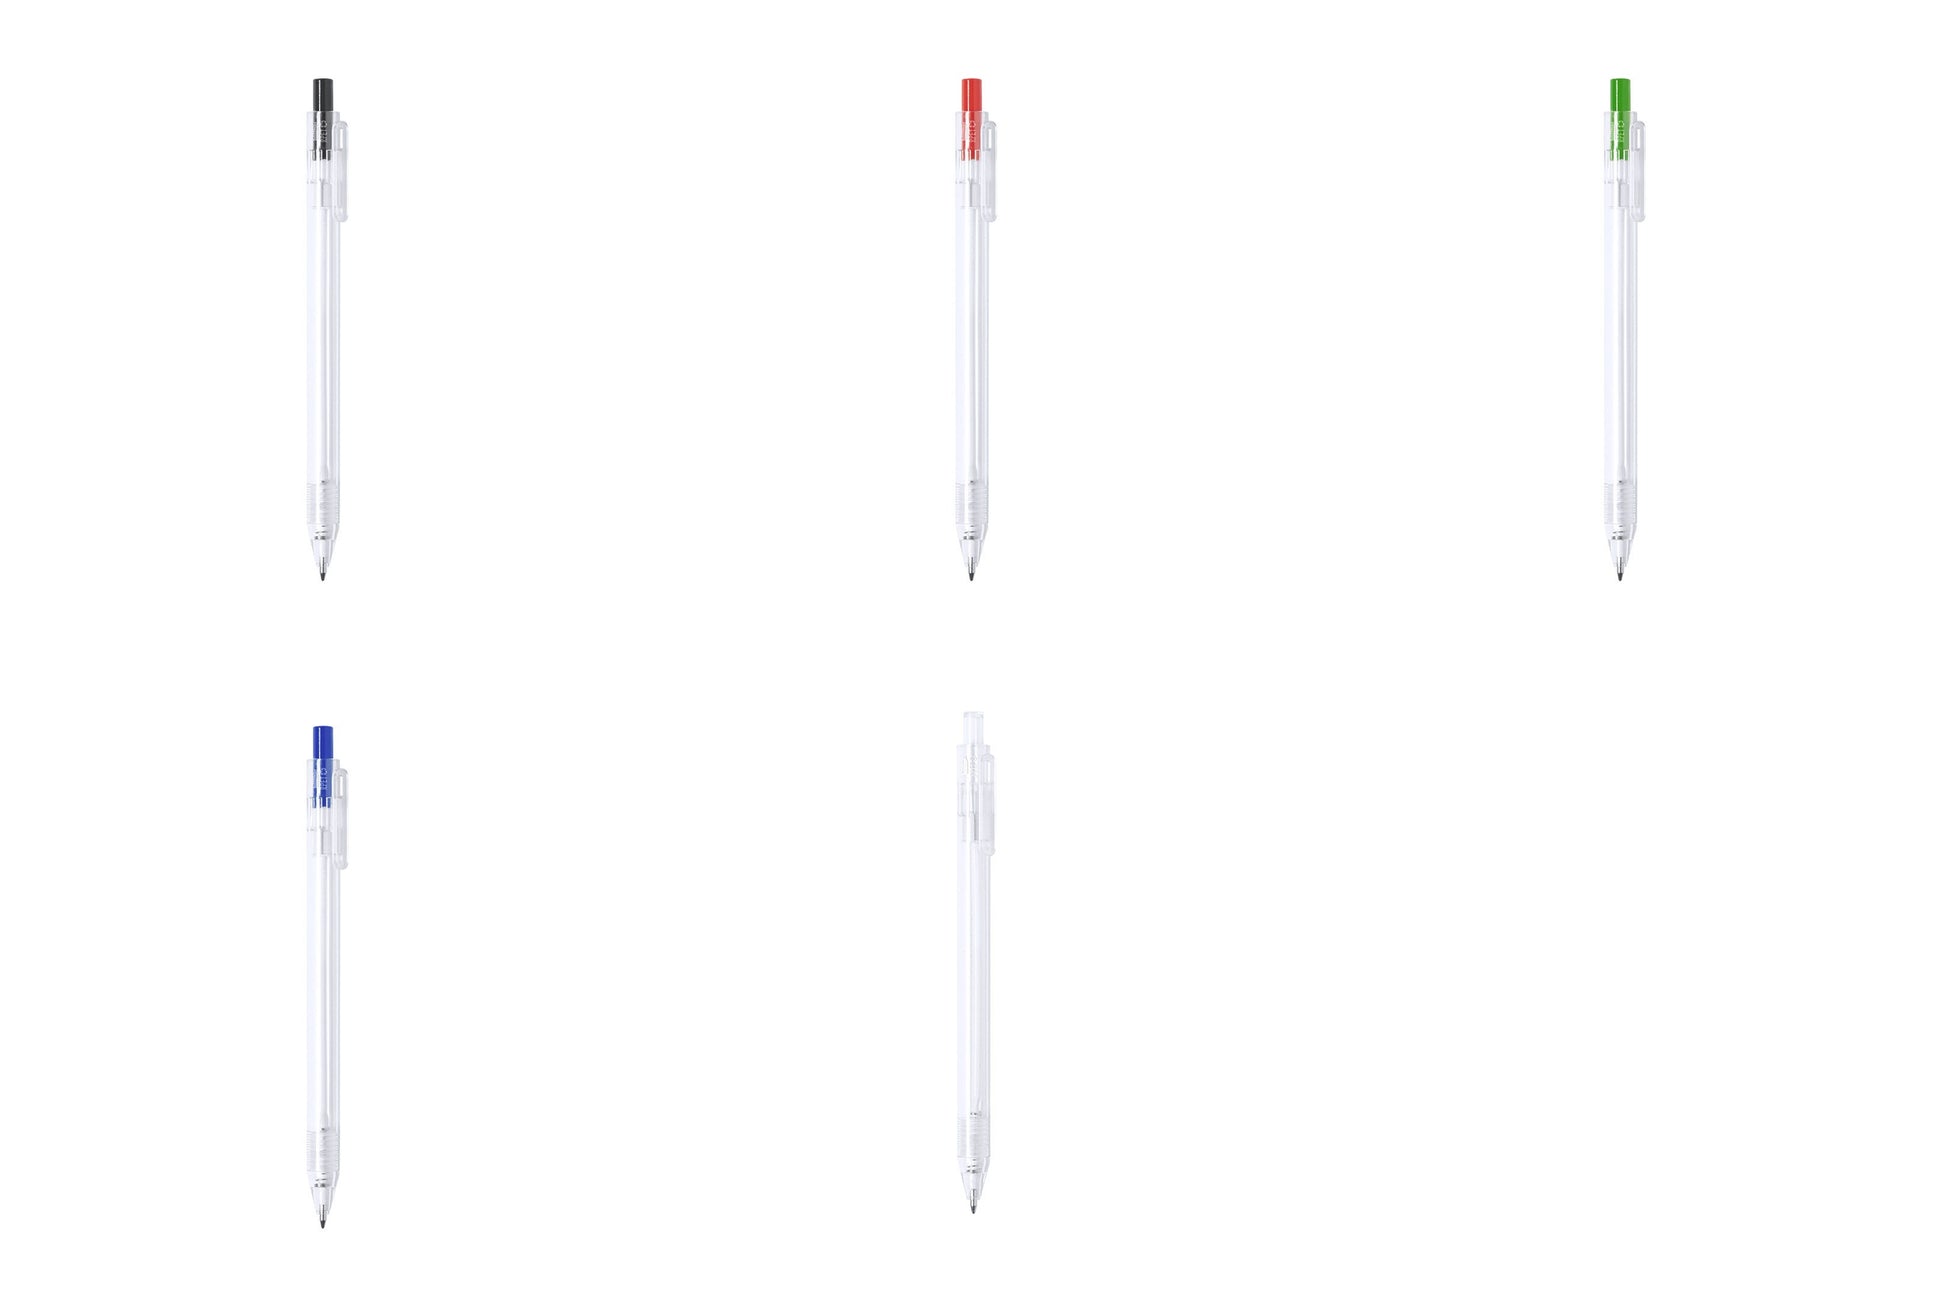 stylo lester Encre bleue de qualité, garantissant une écriture nette et durable.